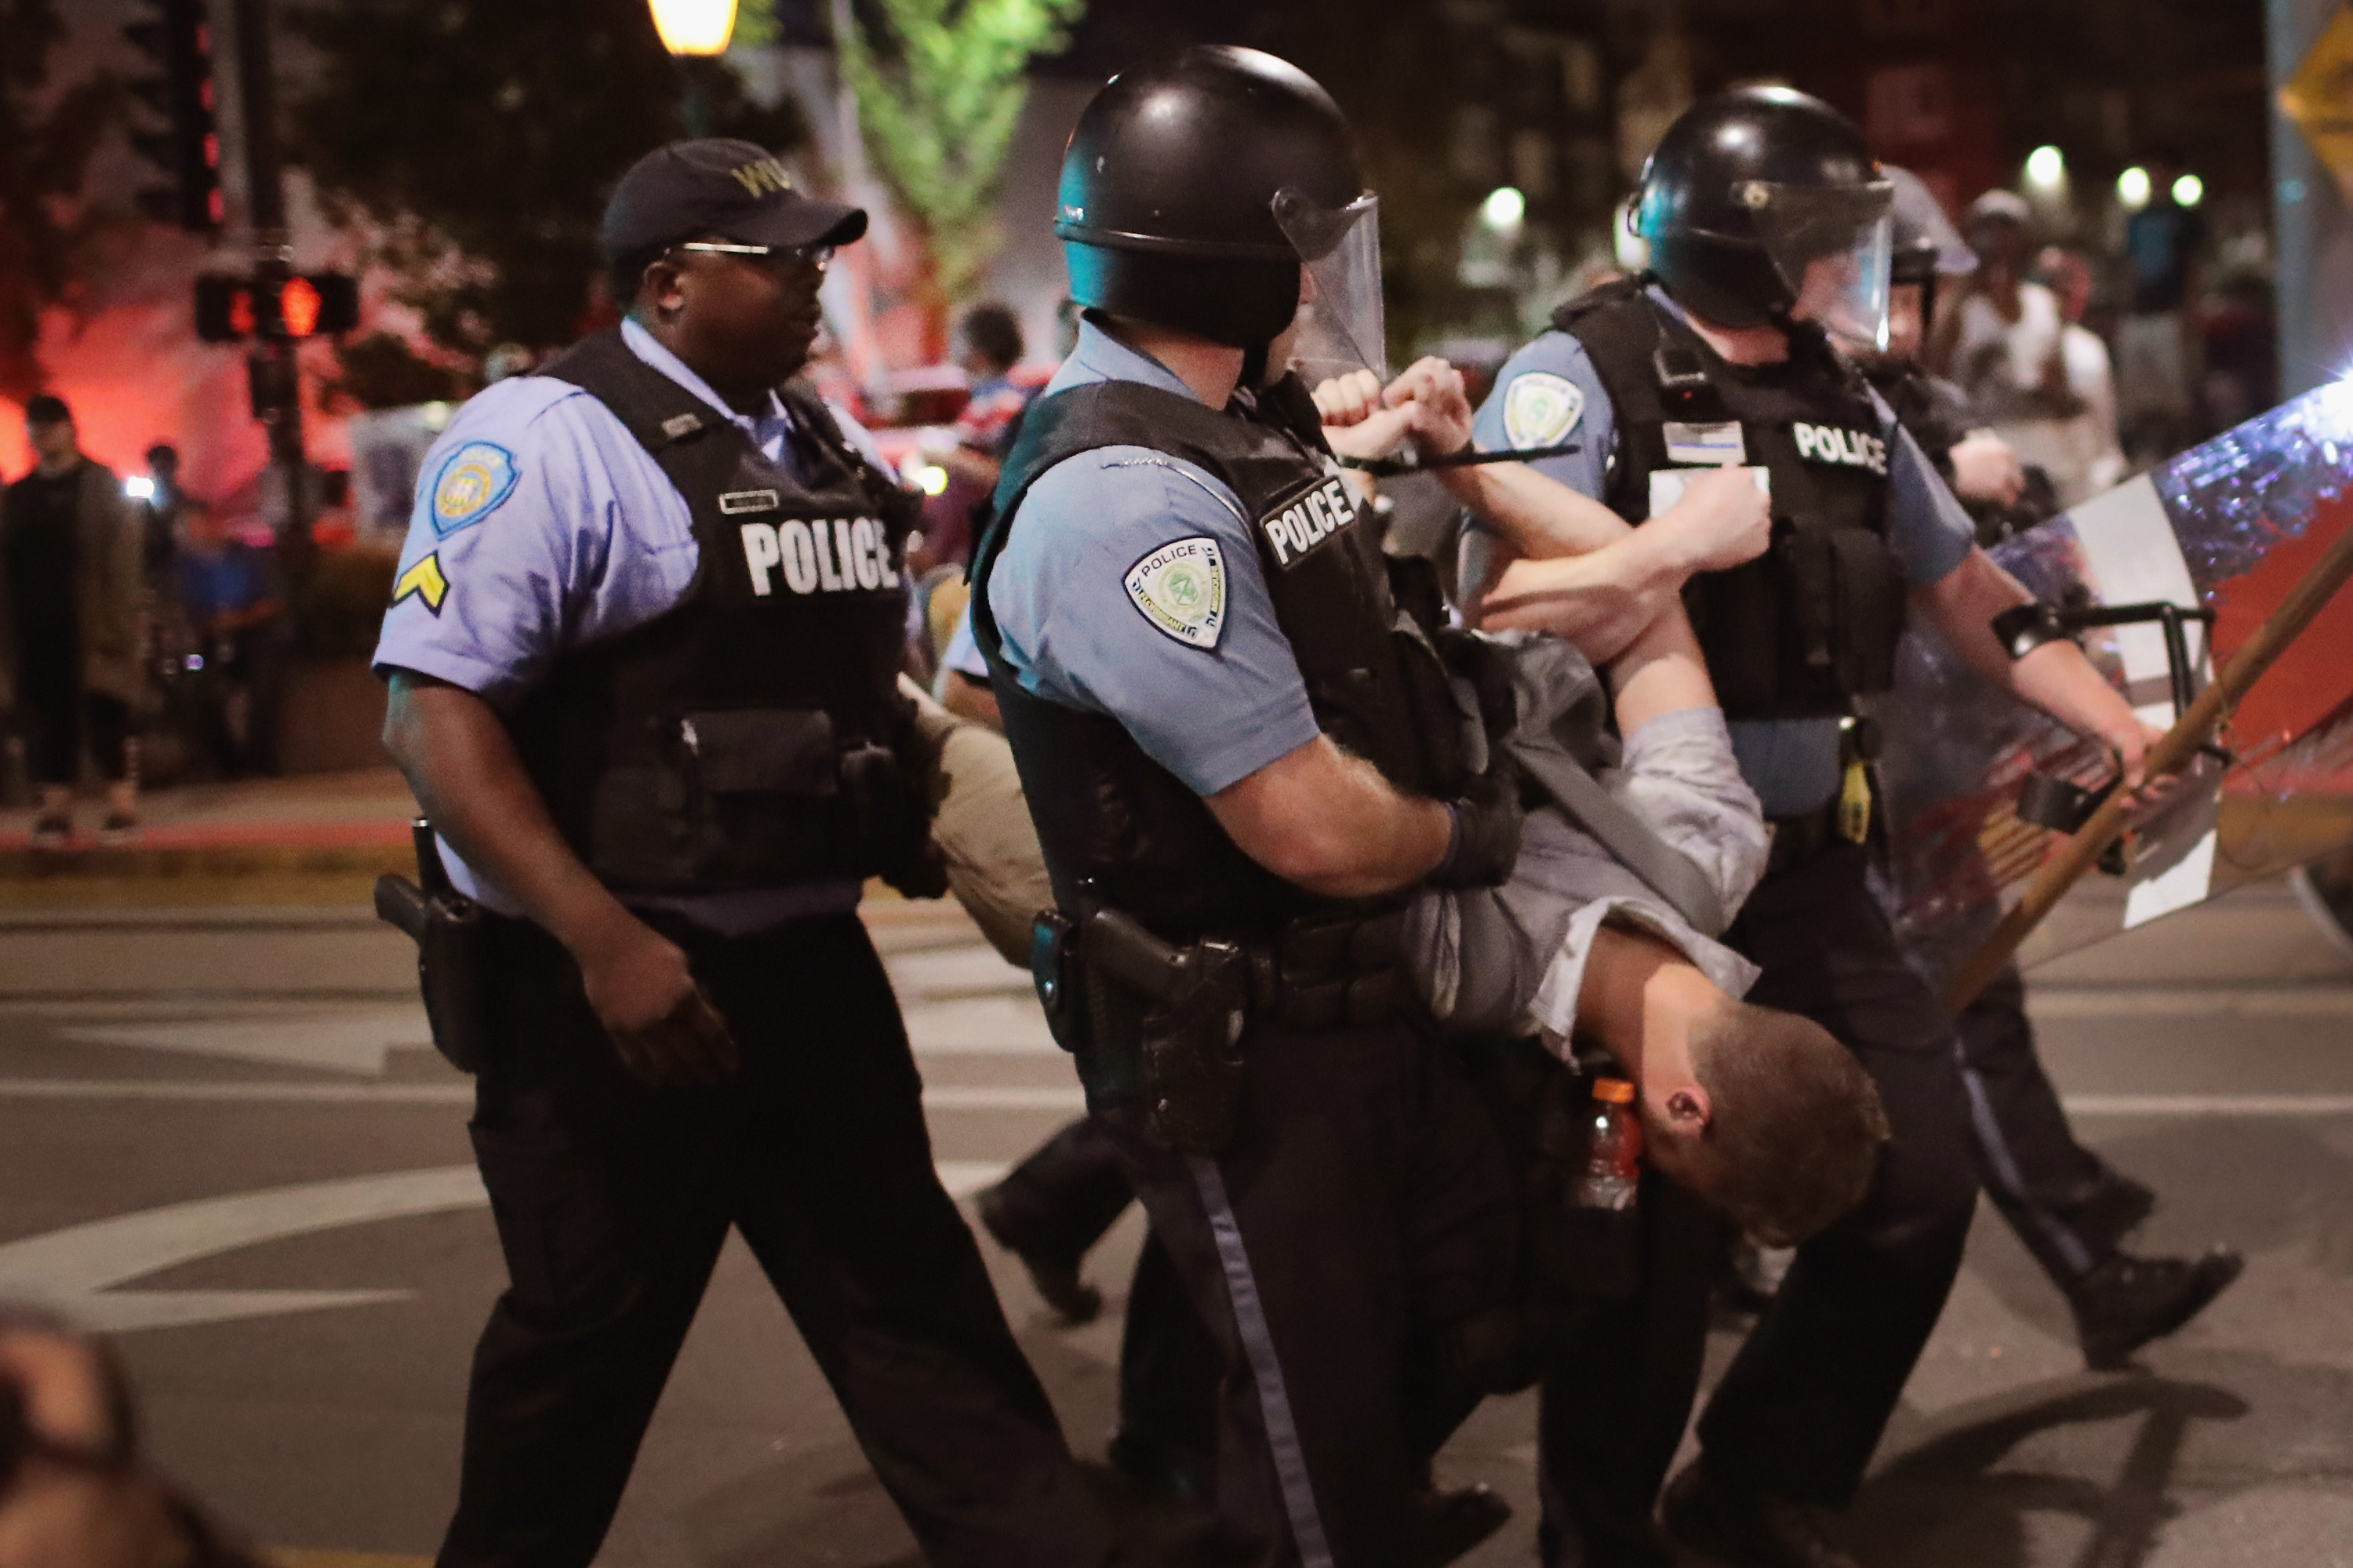 Police arrest a demonstrator in St. Louis